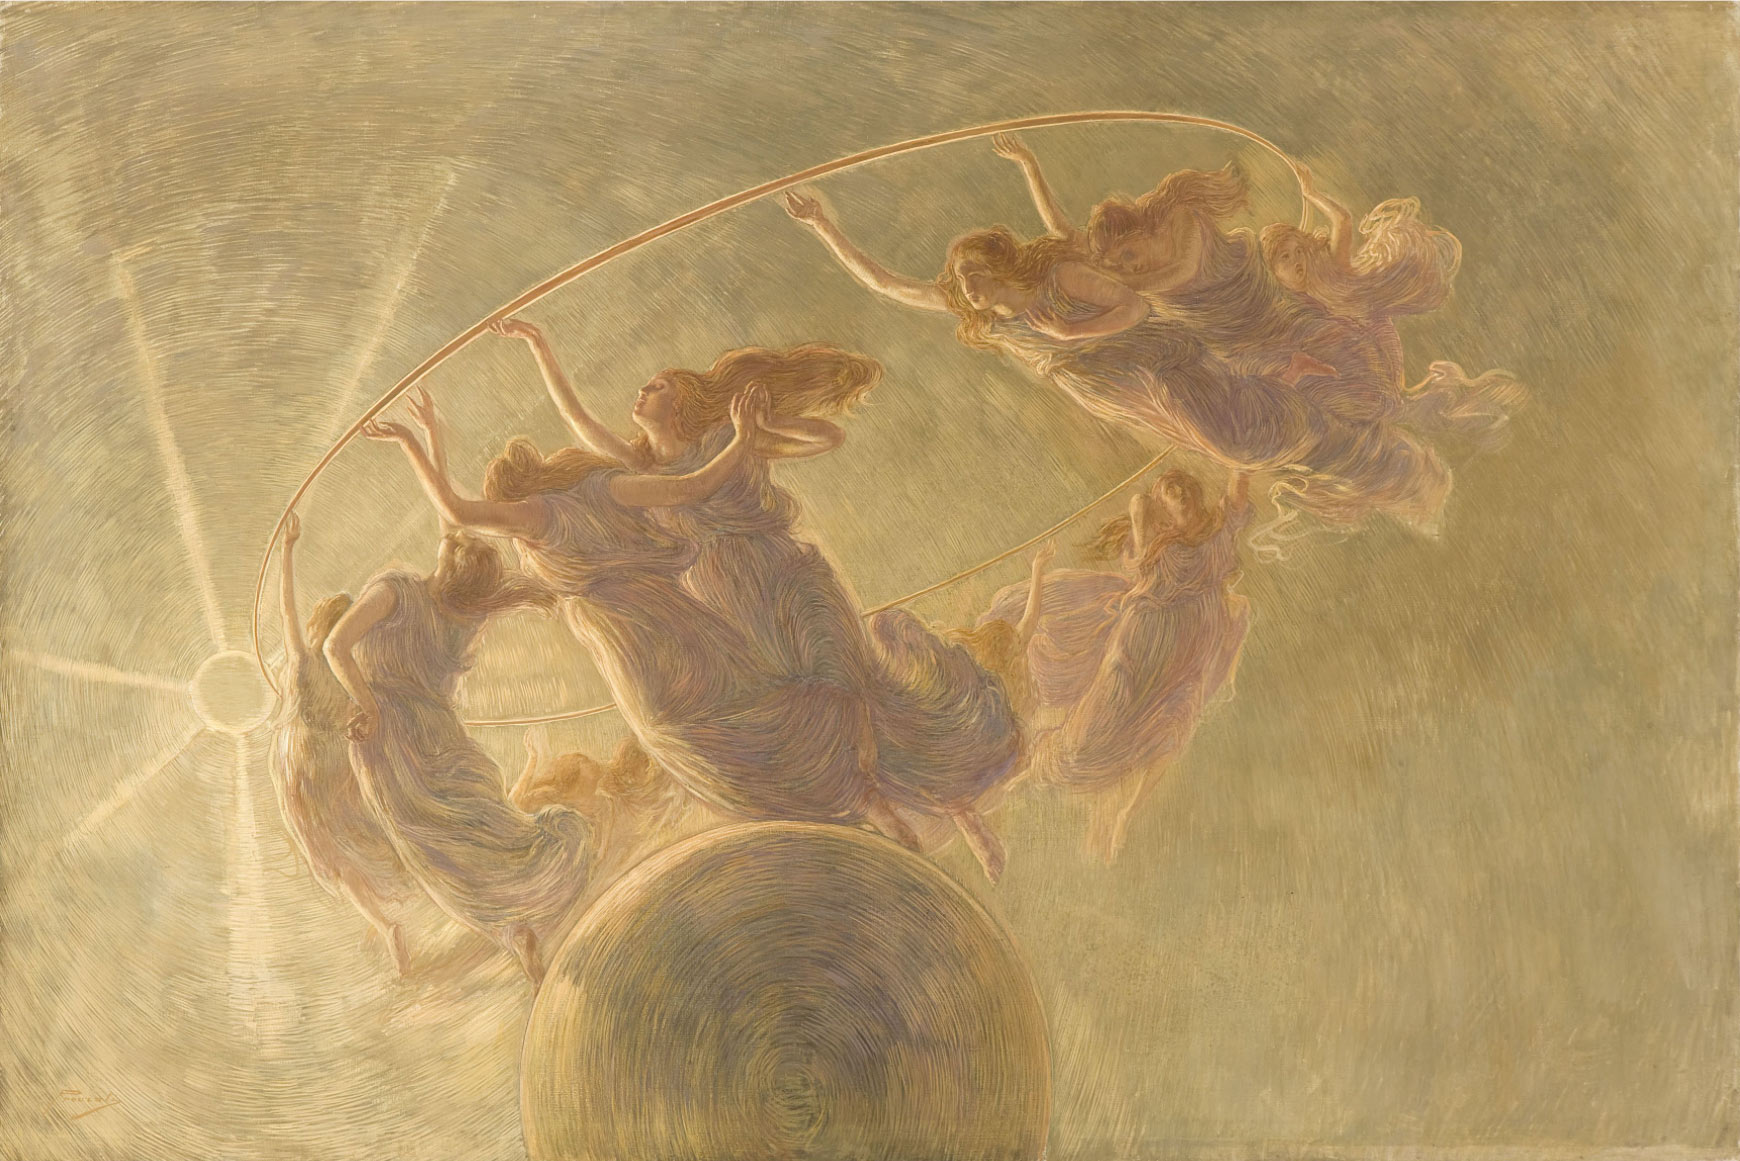 Gaetano Previati, Danza delle Ore (1899; olio e tempera su tela, 134 x 200 cm; Milano, Collezione Fondazione Cariplo, Gallerie dÂ’Italia di Piazza Scala)
